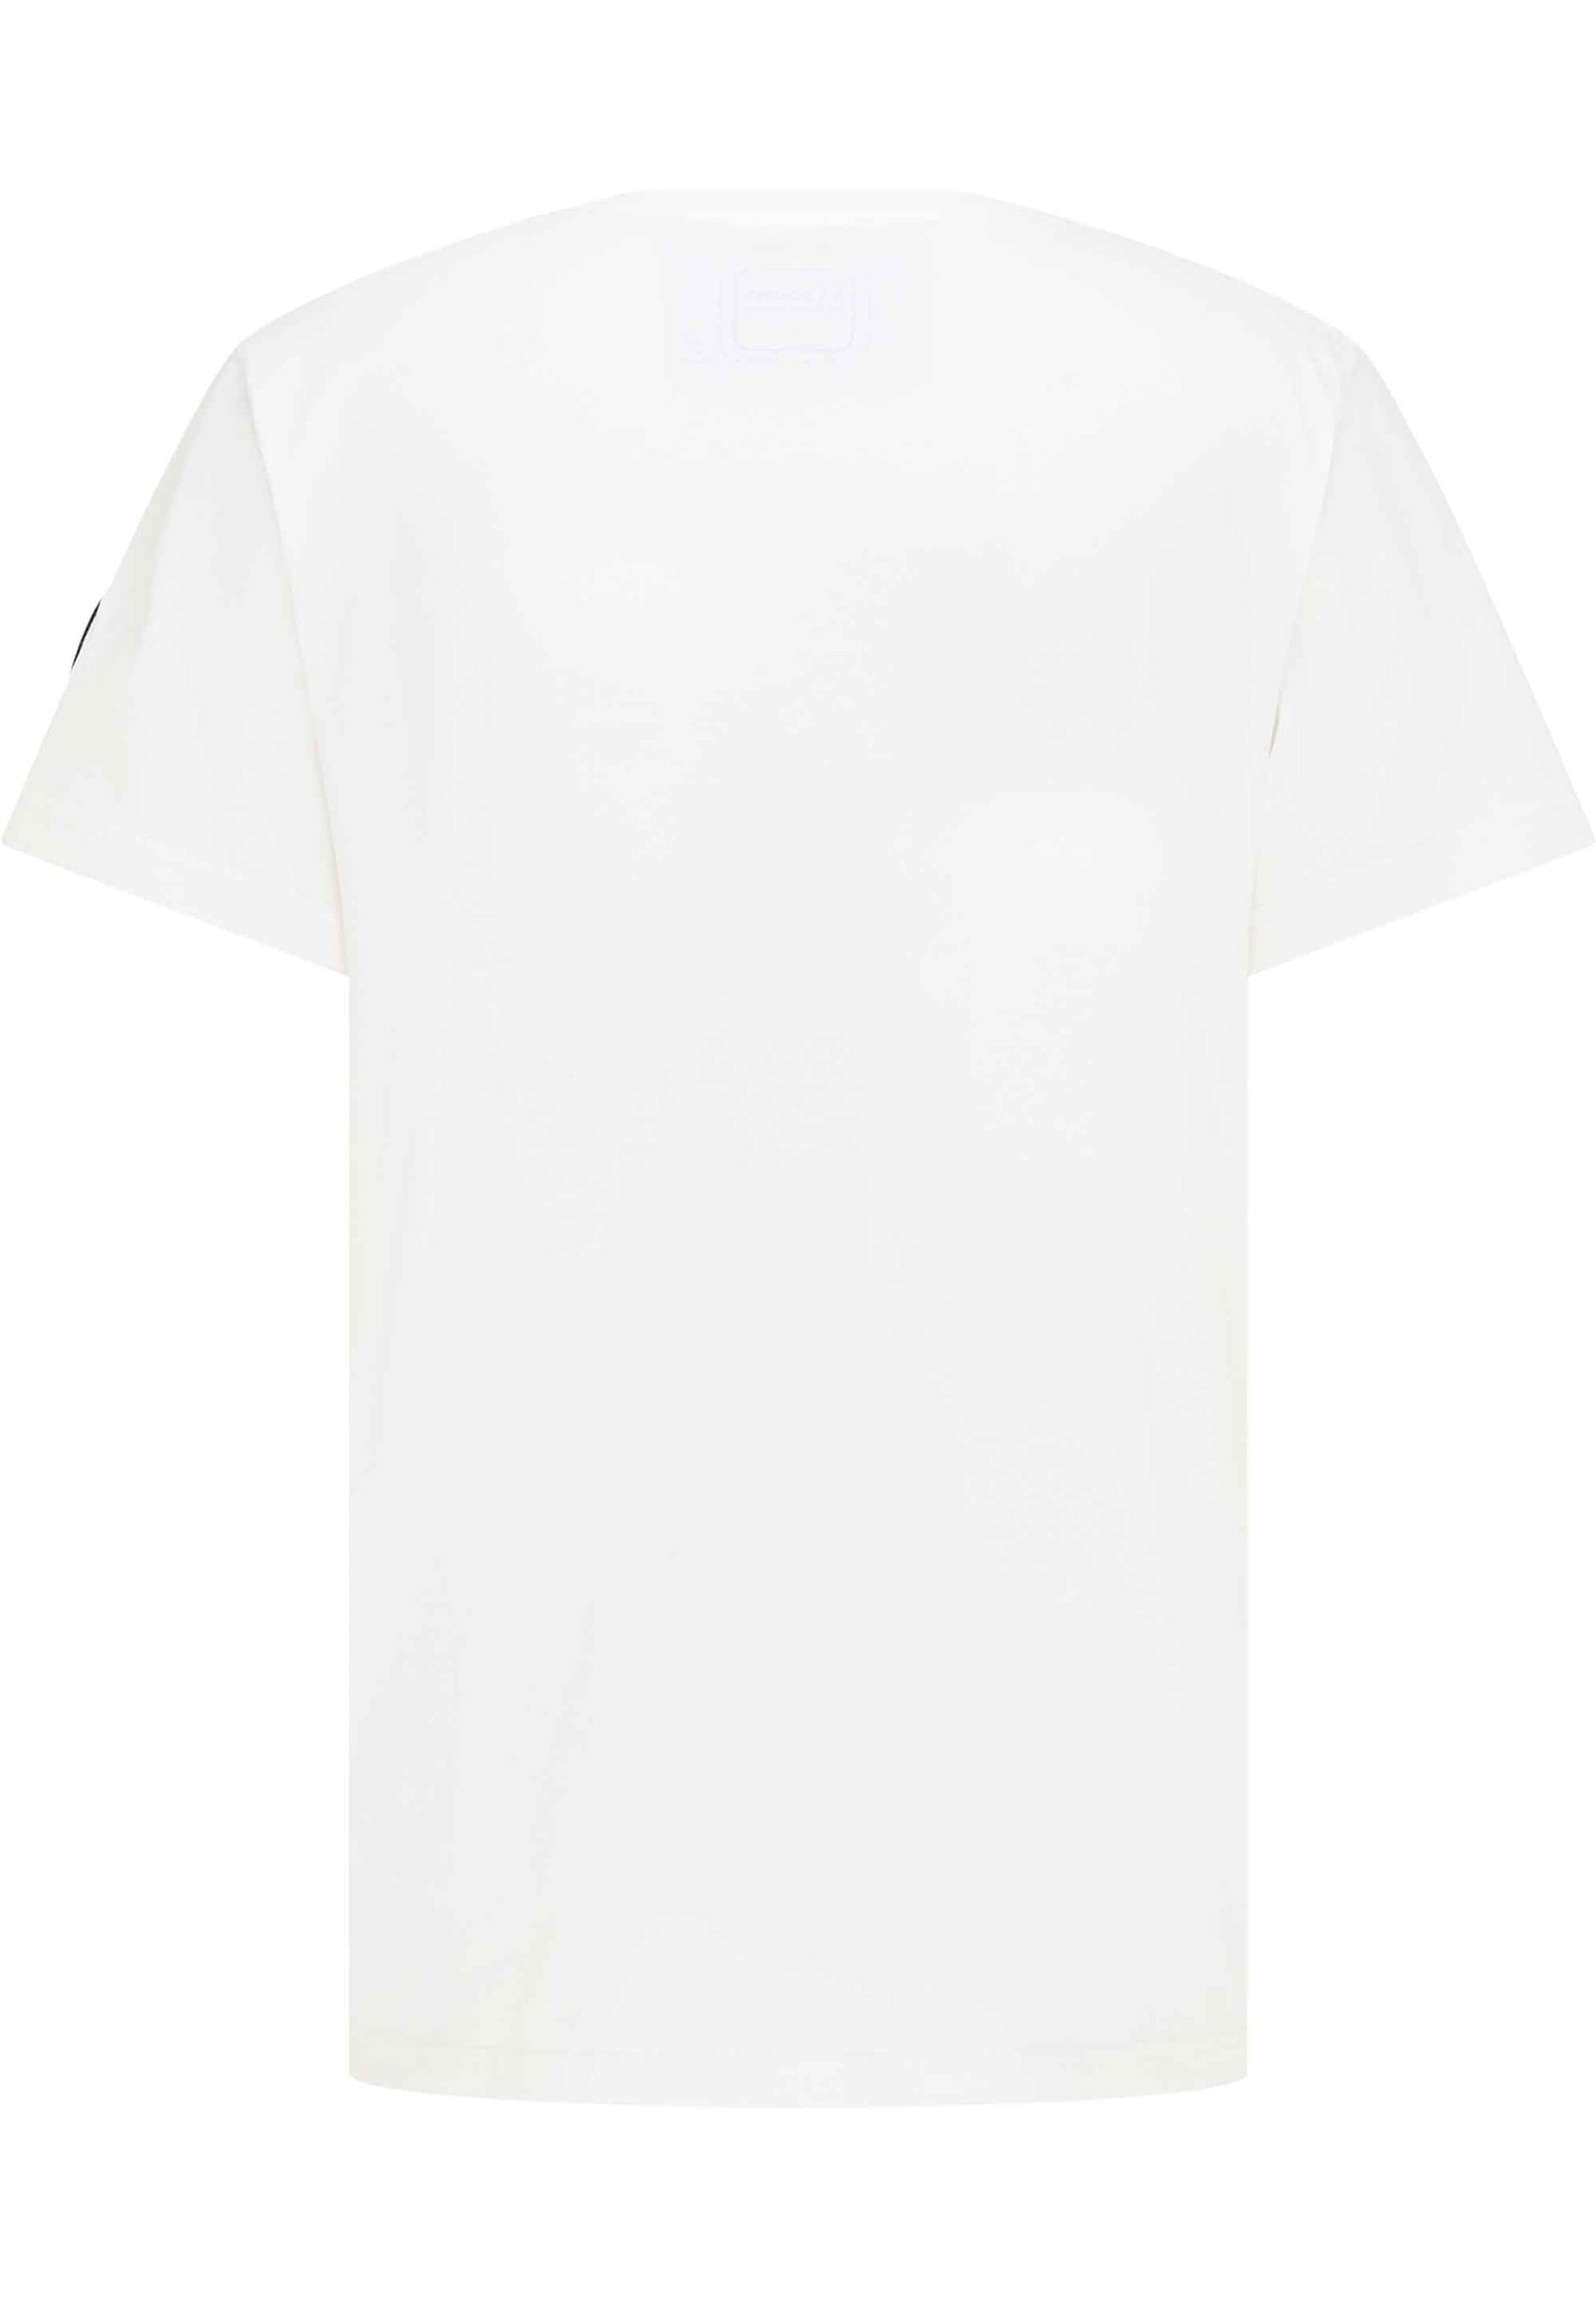 SOMWR INFLUENCER TEE T-Shirt WHT002